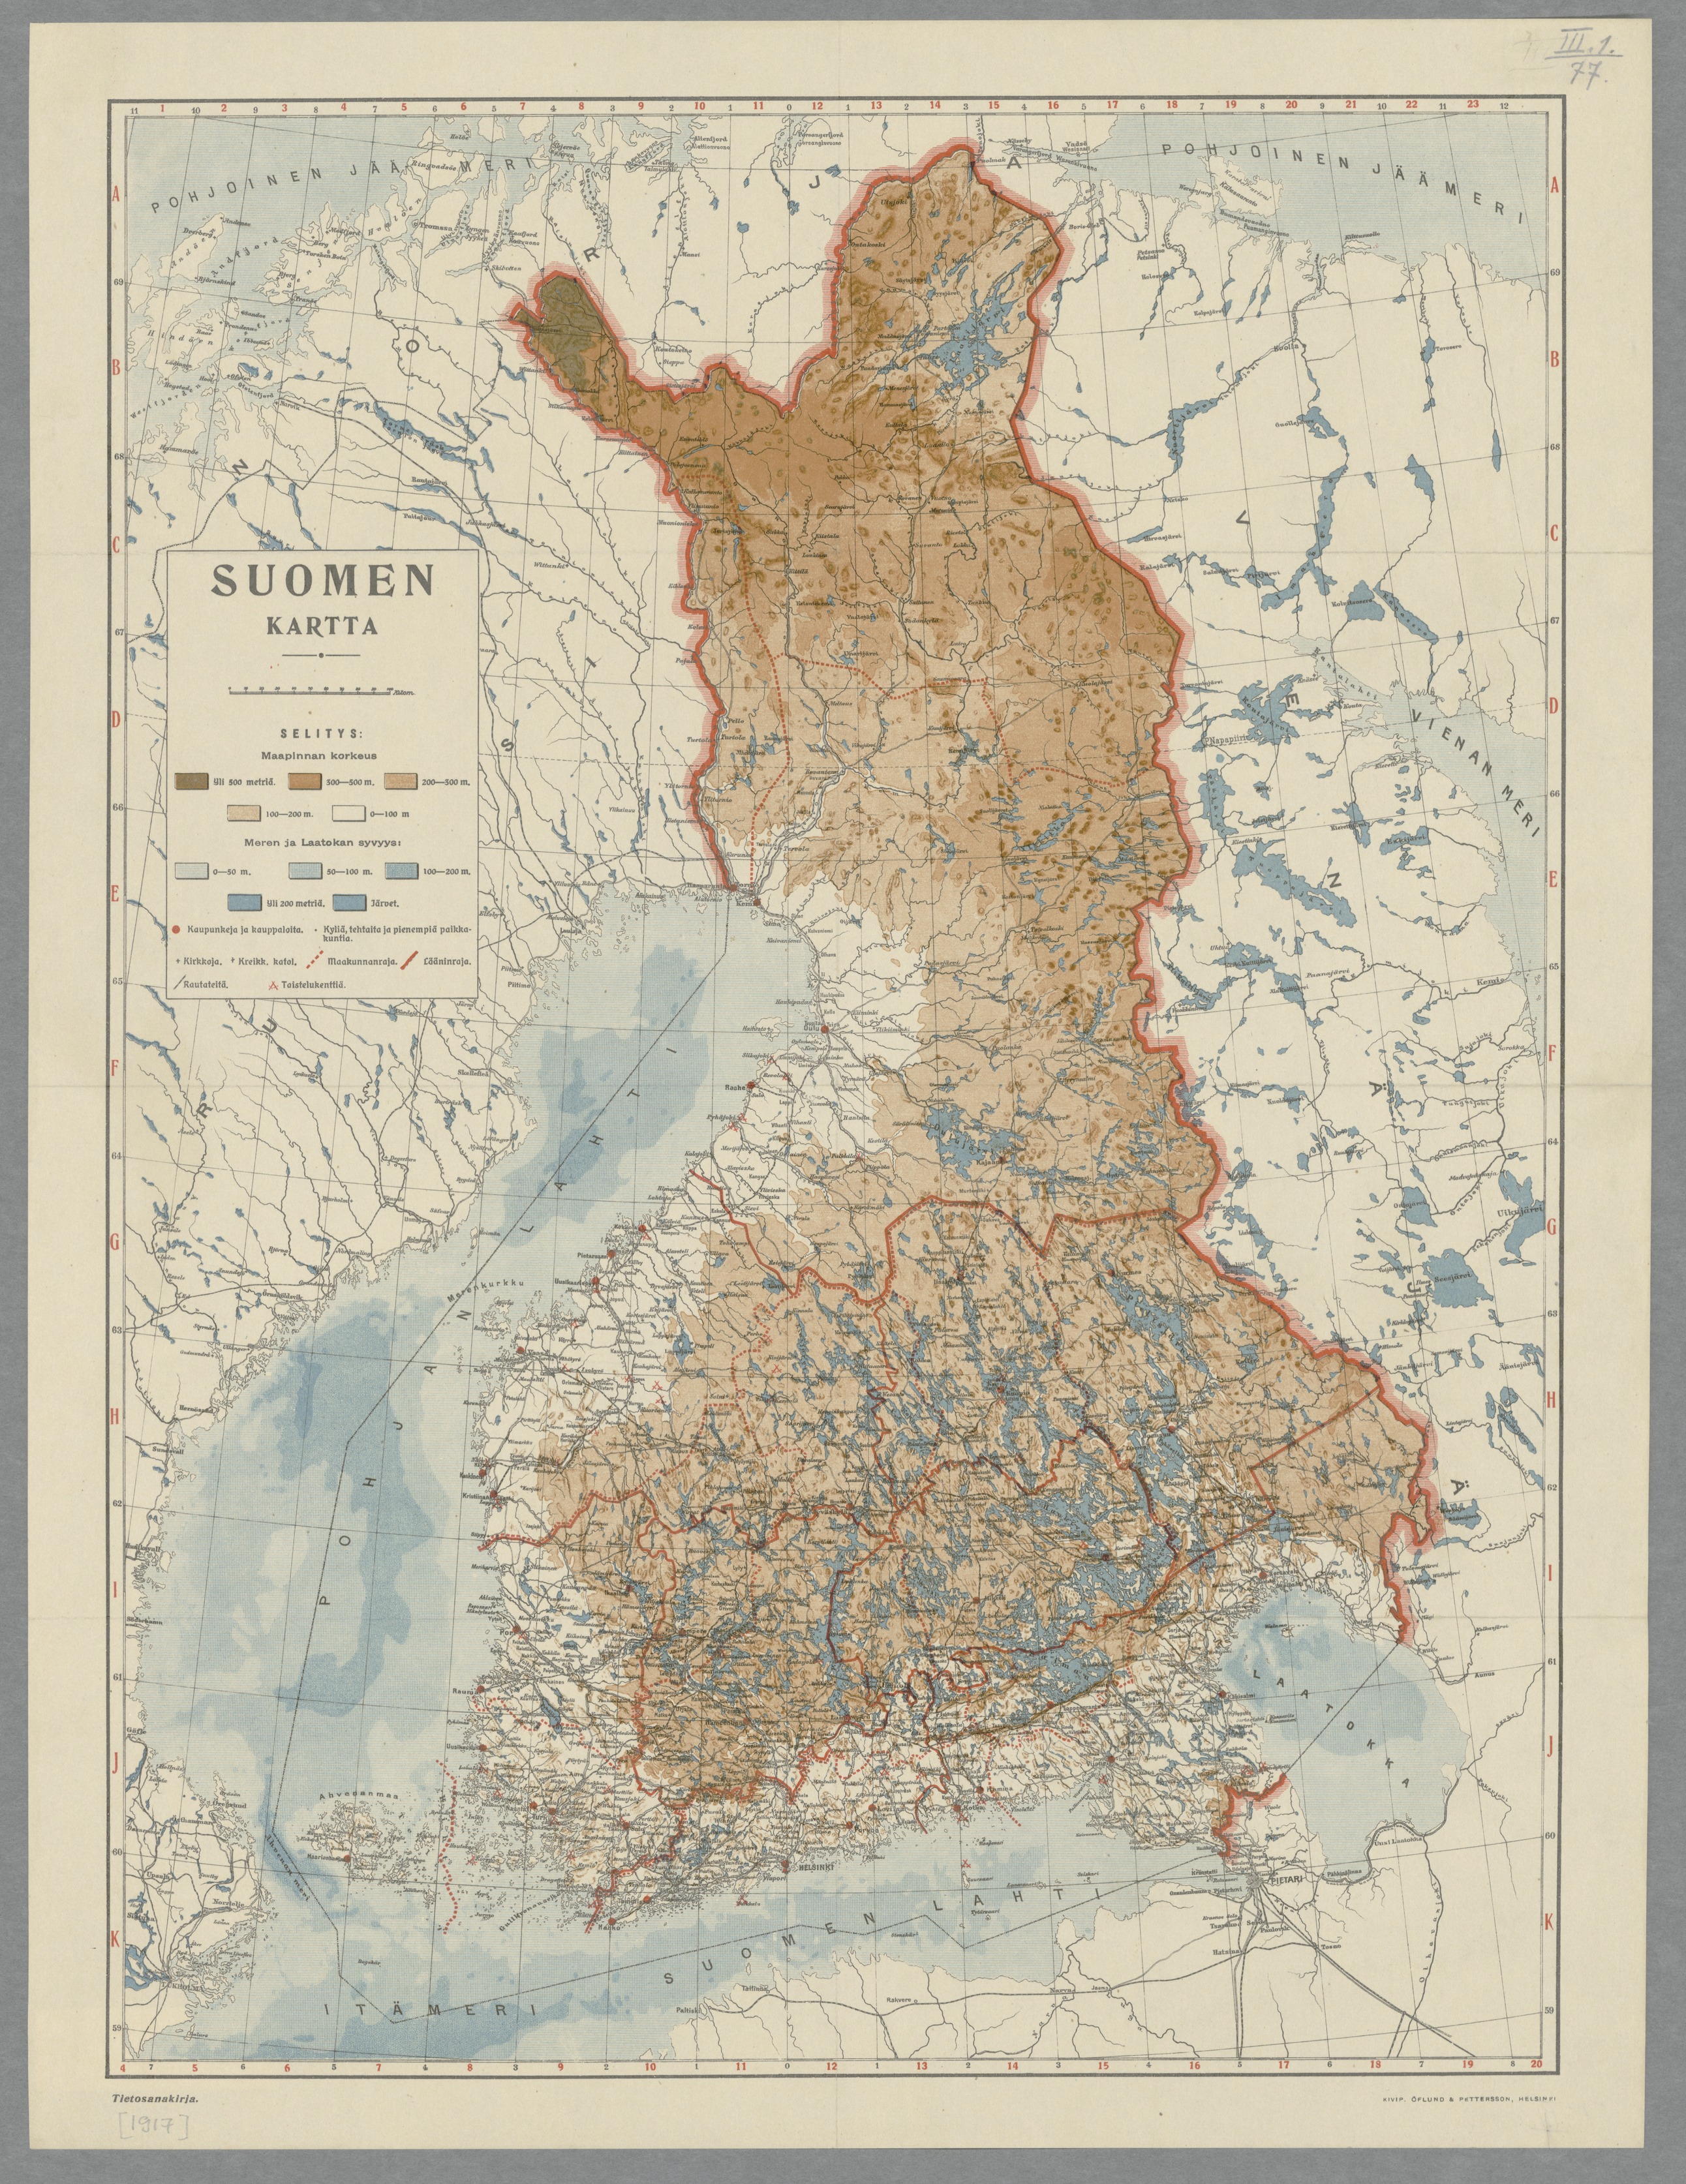 Suomi oli 1917 lukutaitoisten luterilaisten vaurastuva maatalousmaa, jonka  väestöstä puolet oli alle 25-vuotiaita – Svinhuvfud